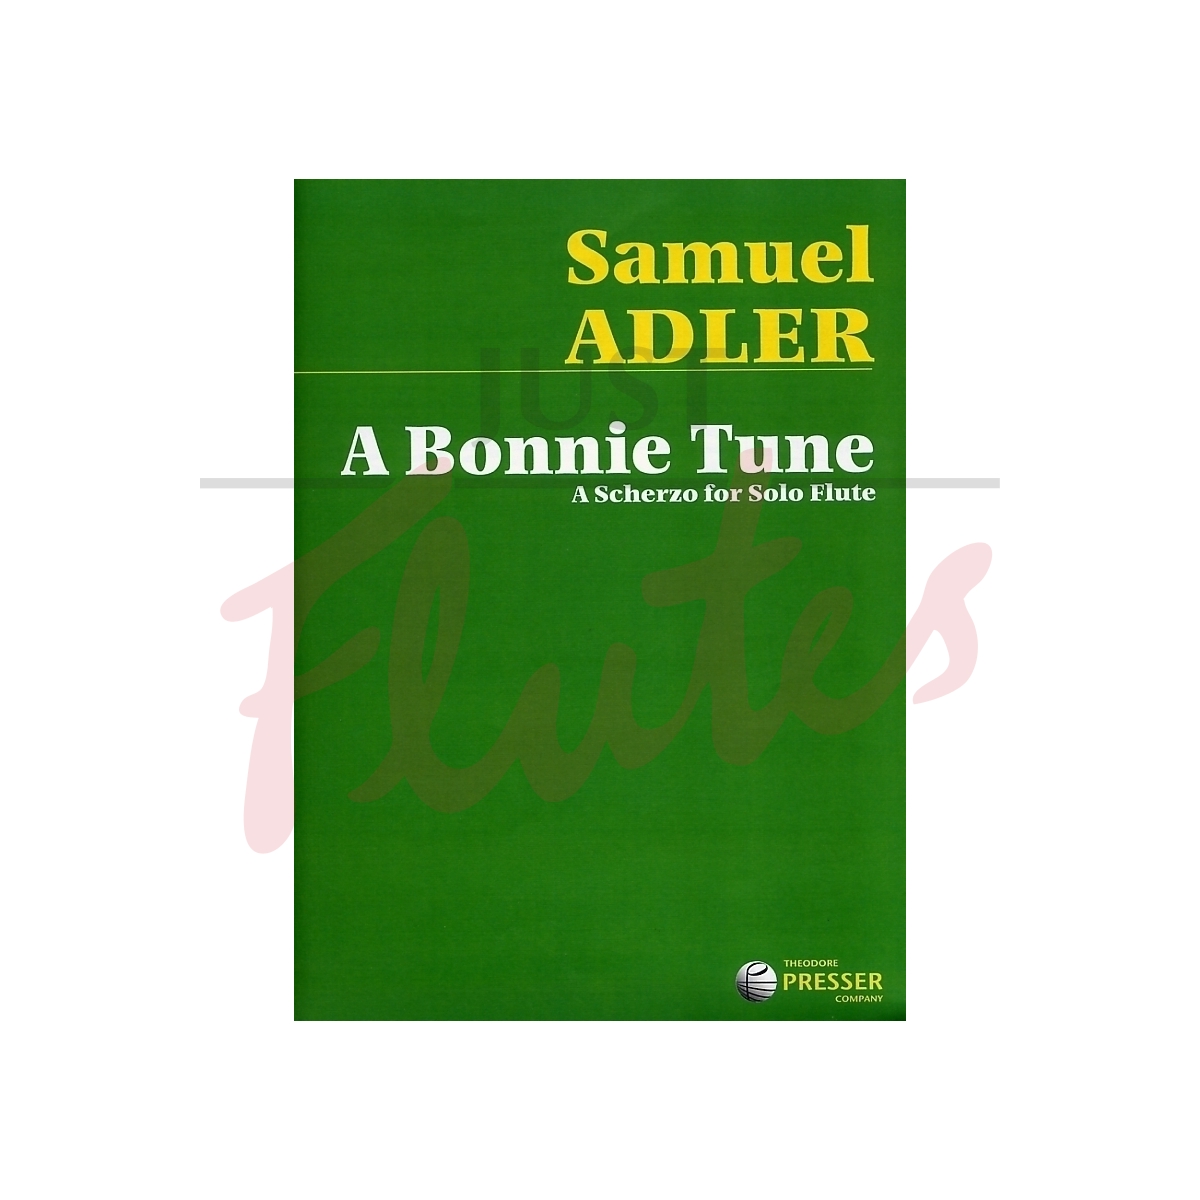 A Bonnie Tune - A Scherzo for Solo Flute